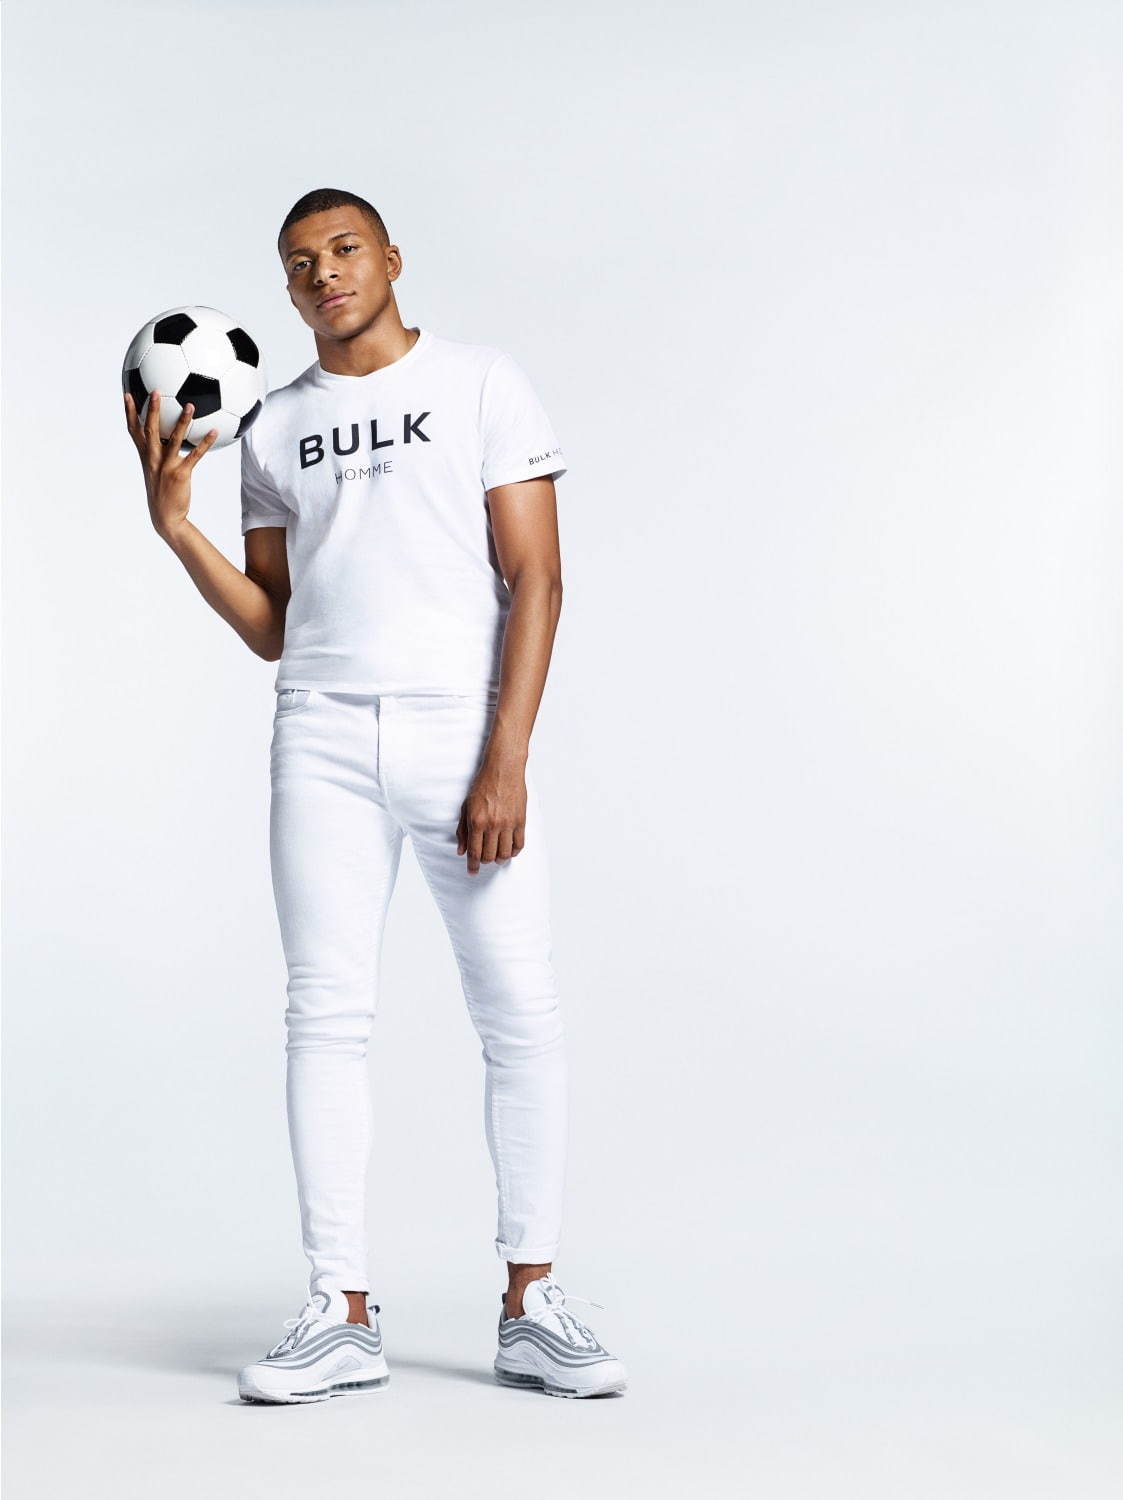 サッカーフランス代表エムバペ 日本発メンズスキンケアブランド バルクオム のアンバサダーに ファッションプレス